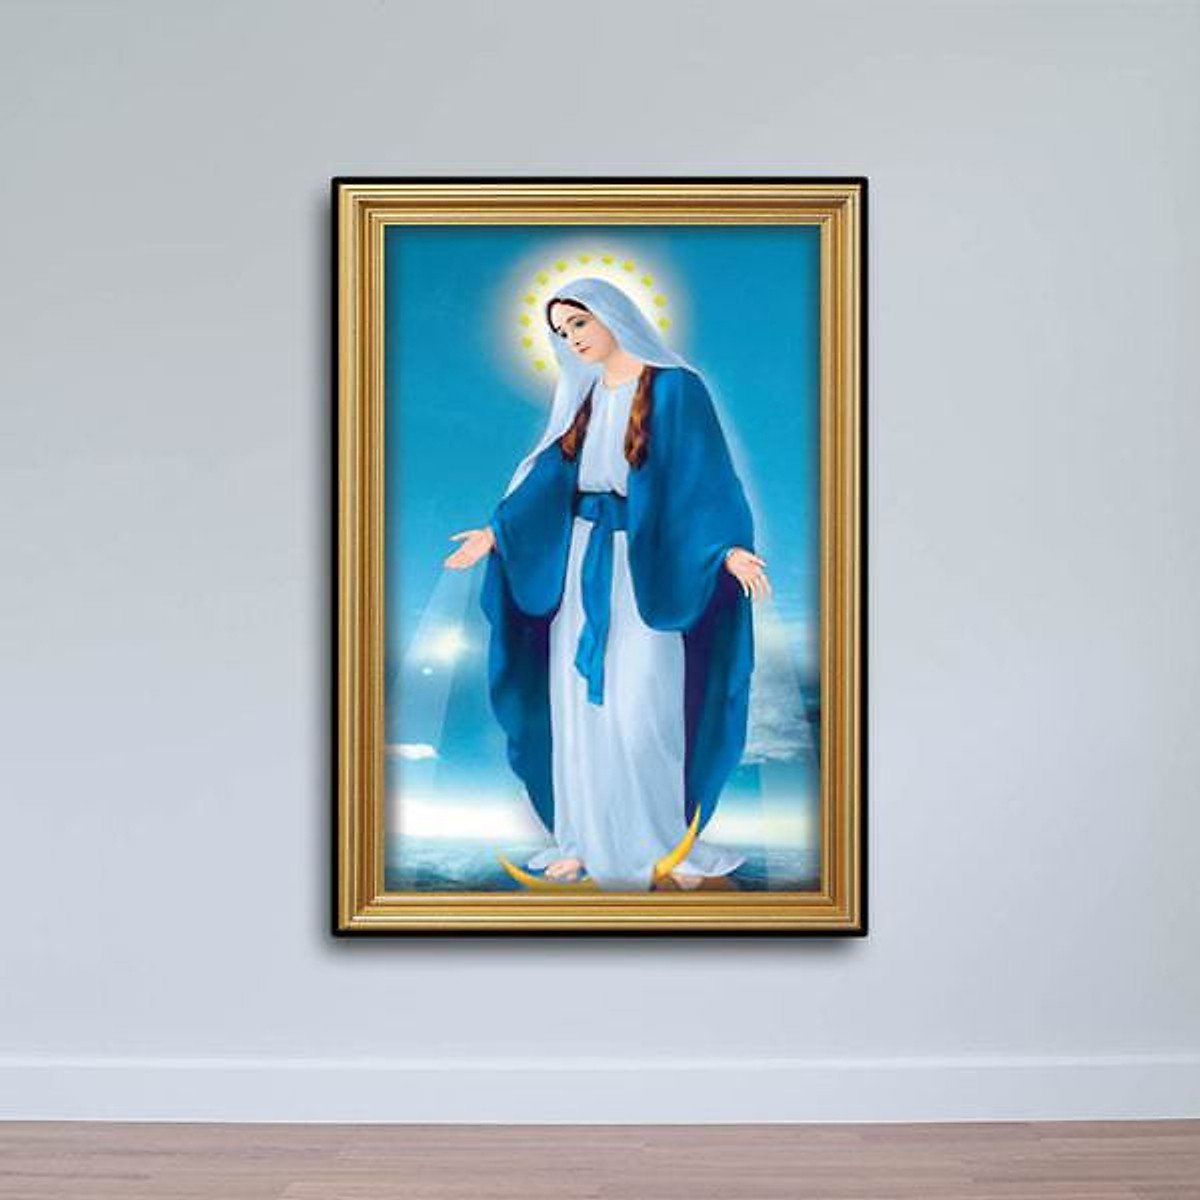 Tranh Thiên Chúa Tranh Đức Mẹ Maria W708 - Các loại tranh khác